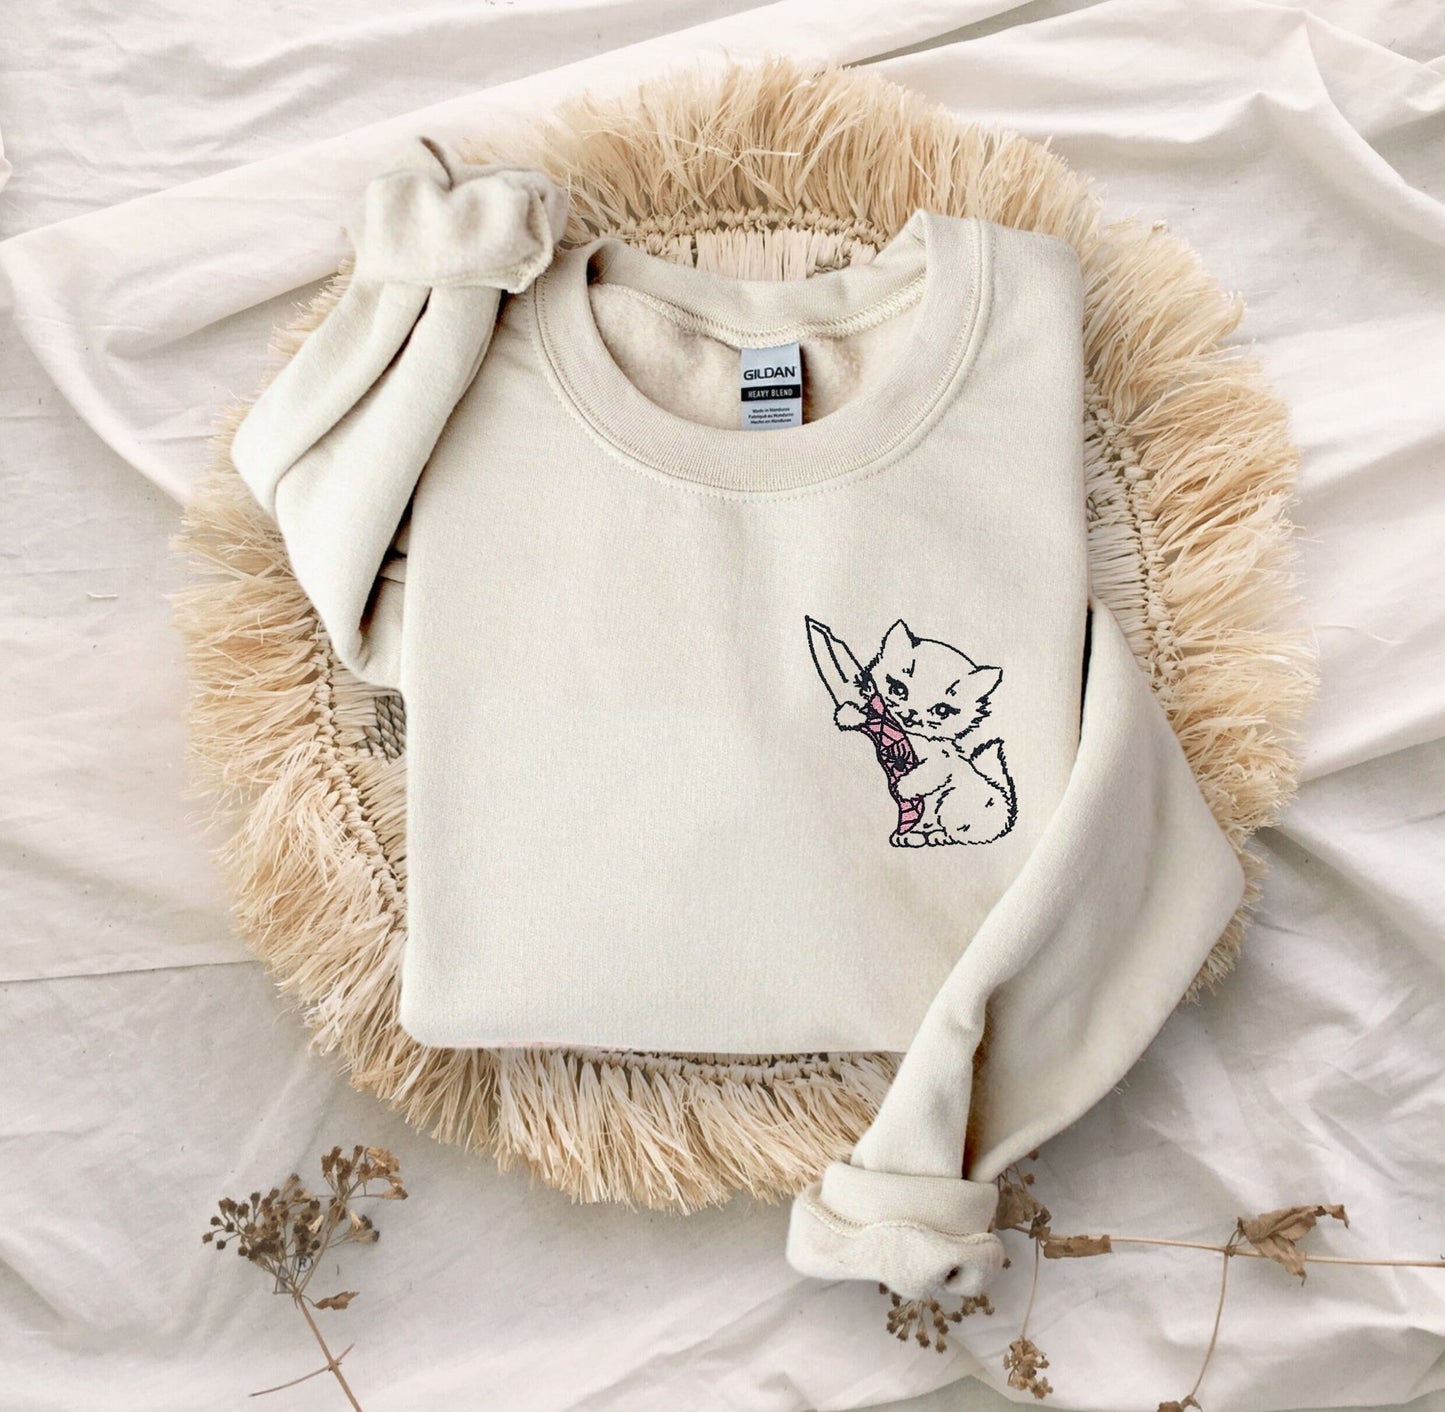 Switchblade Kitten Embroidered Unisex Crewneck Sweatshirt